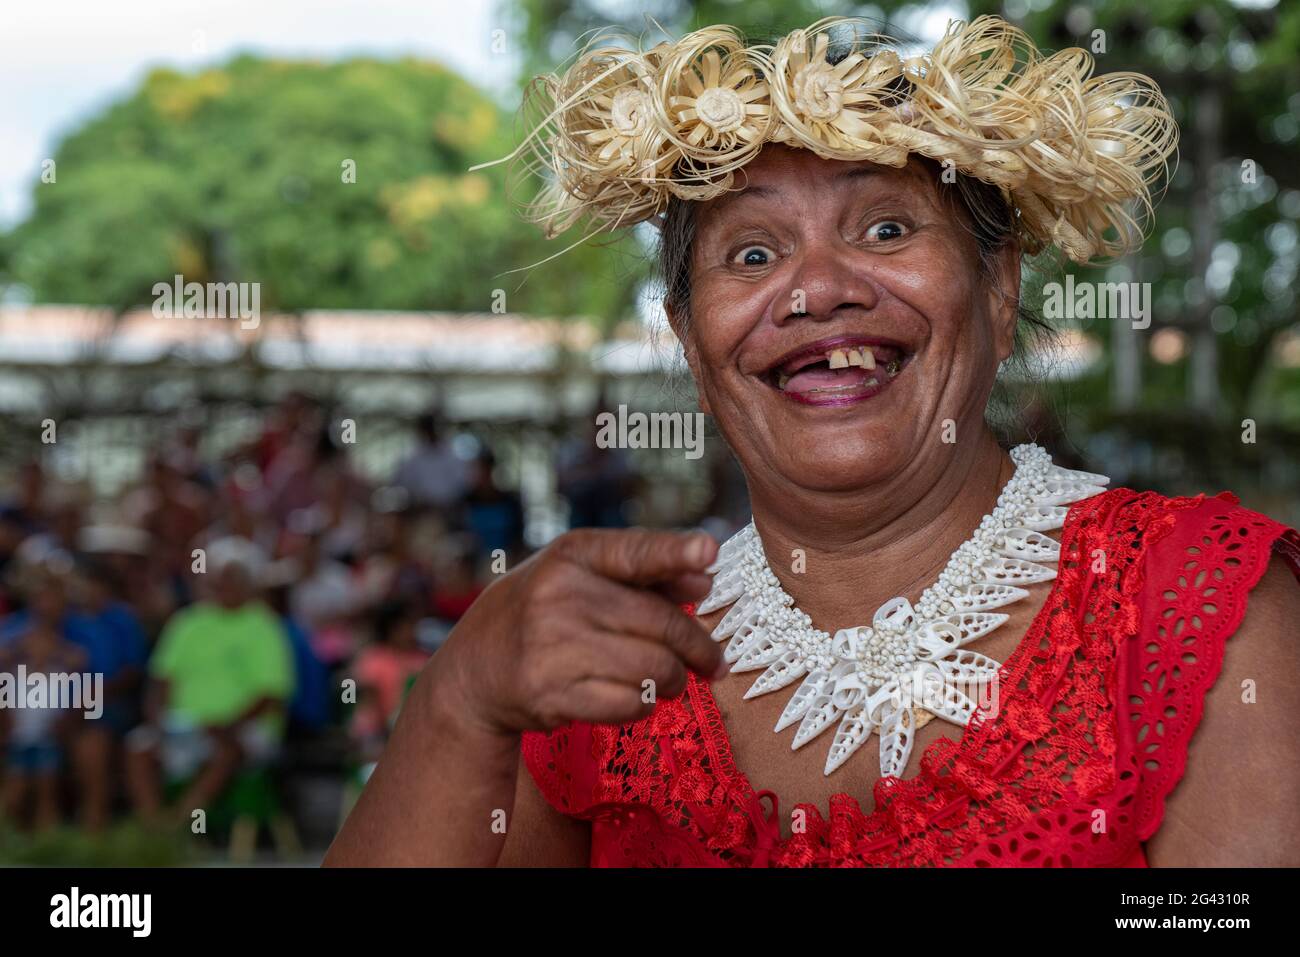 Joyeuse femme tahitienne sourit avec des dents manquantes lors d'un festival culturel, Papeete, Tahiti, Iles du vent, Polynésie française, Pacifique Sud Banque D'Images